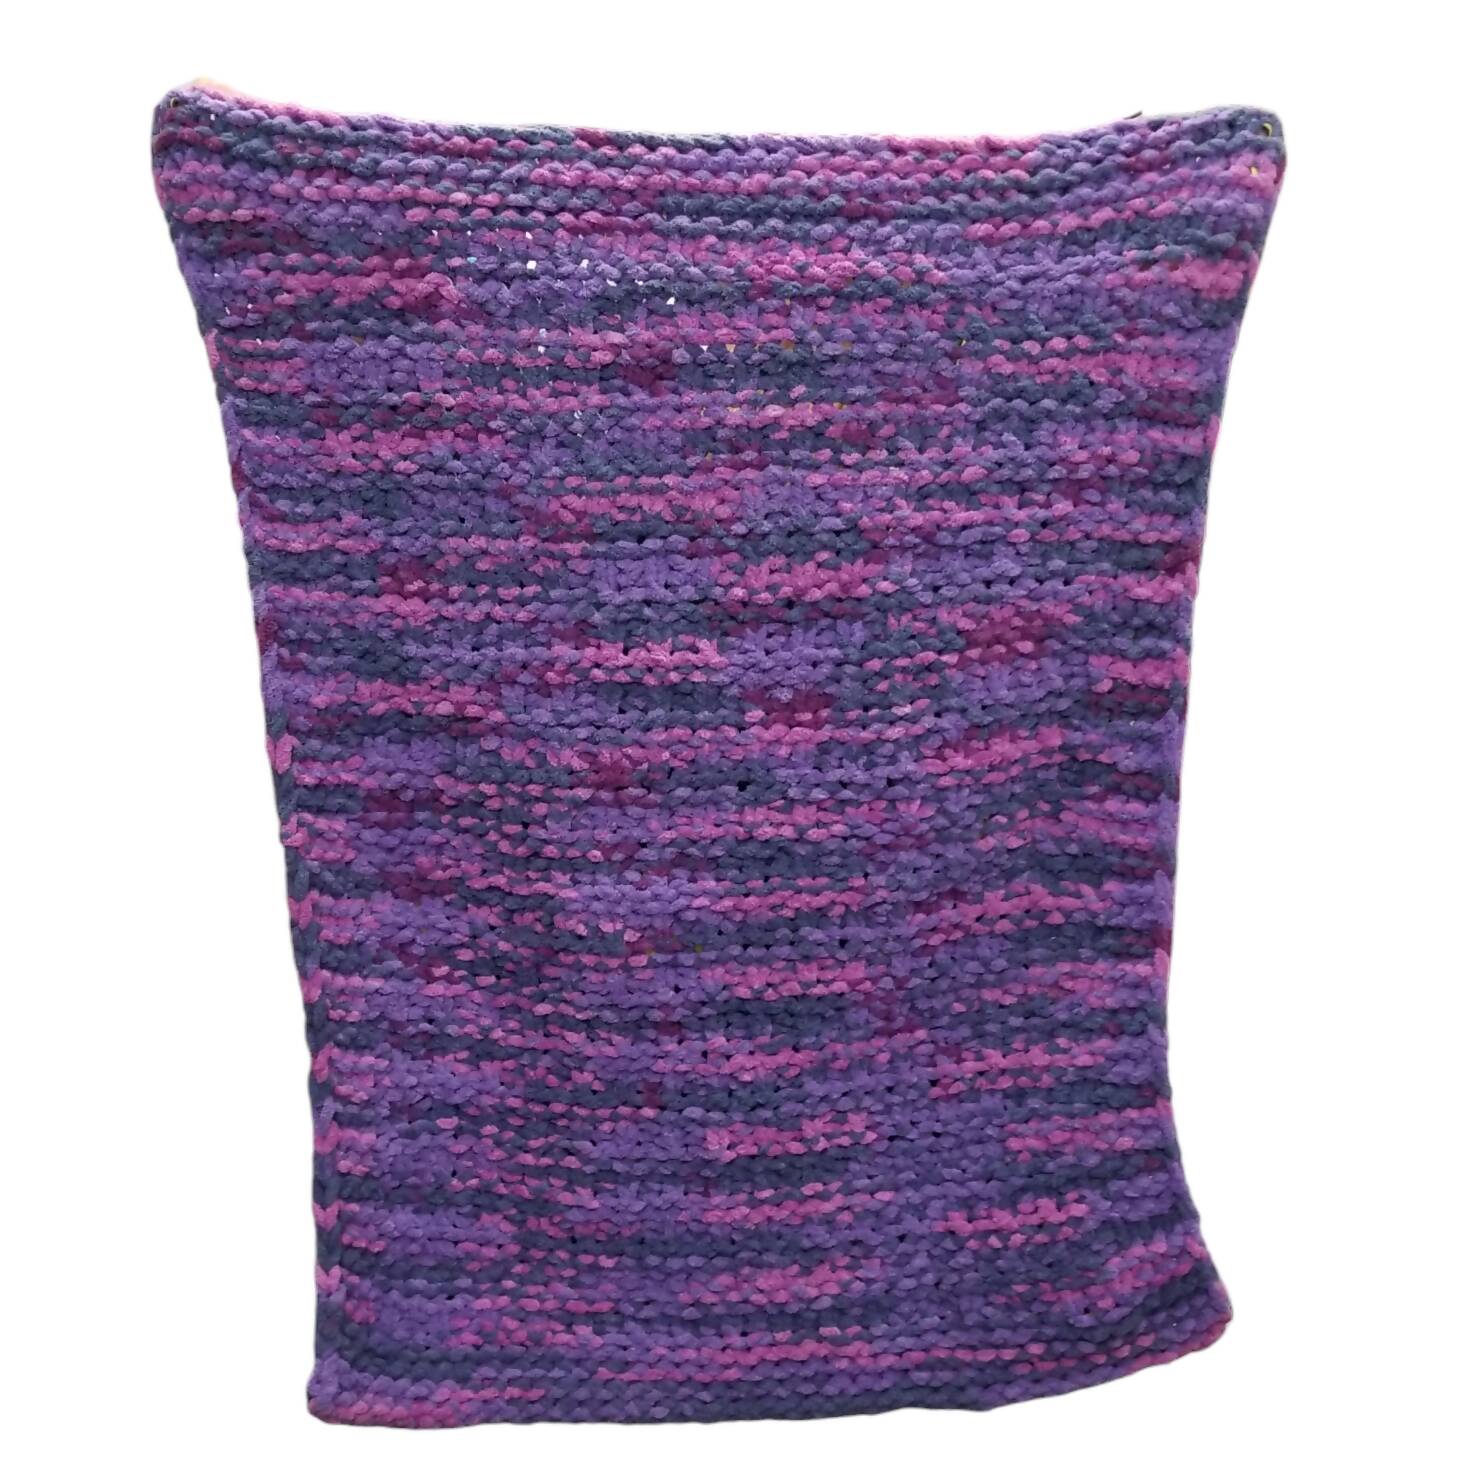 Purple knit baby blanket